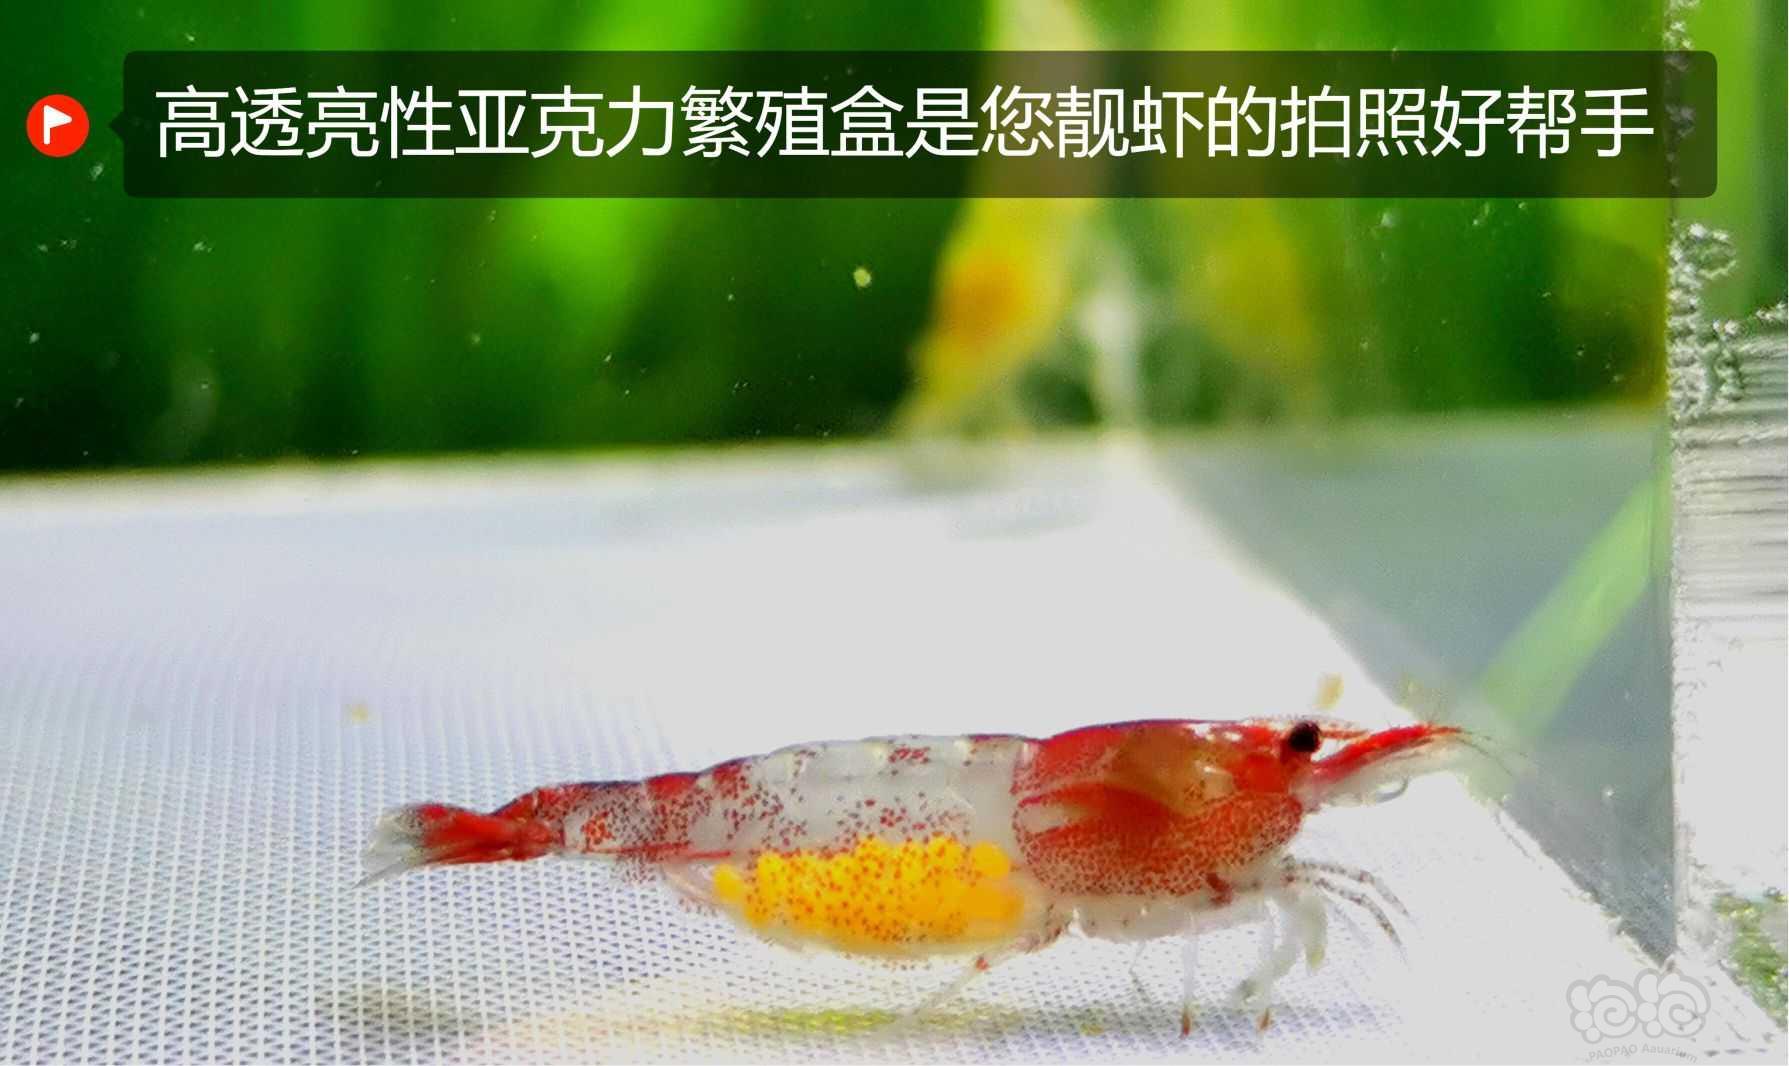 水晶虾、米虾、孔雀鱼隔离盒、繁殖盒-图8